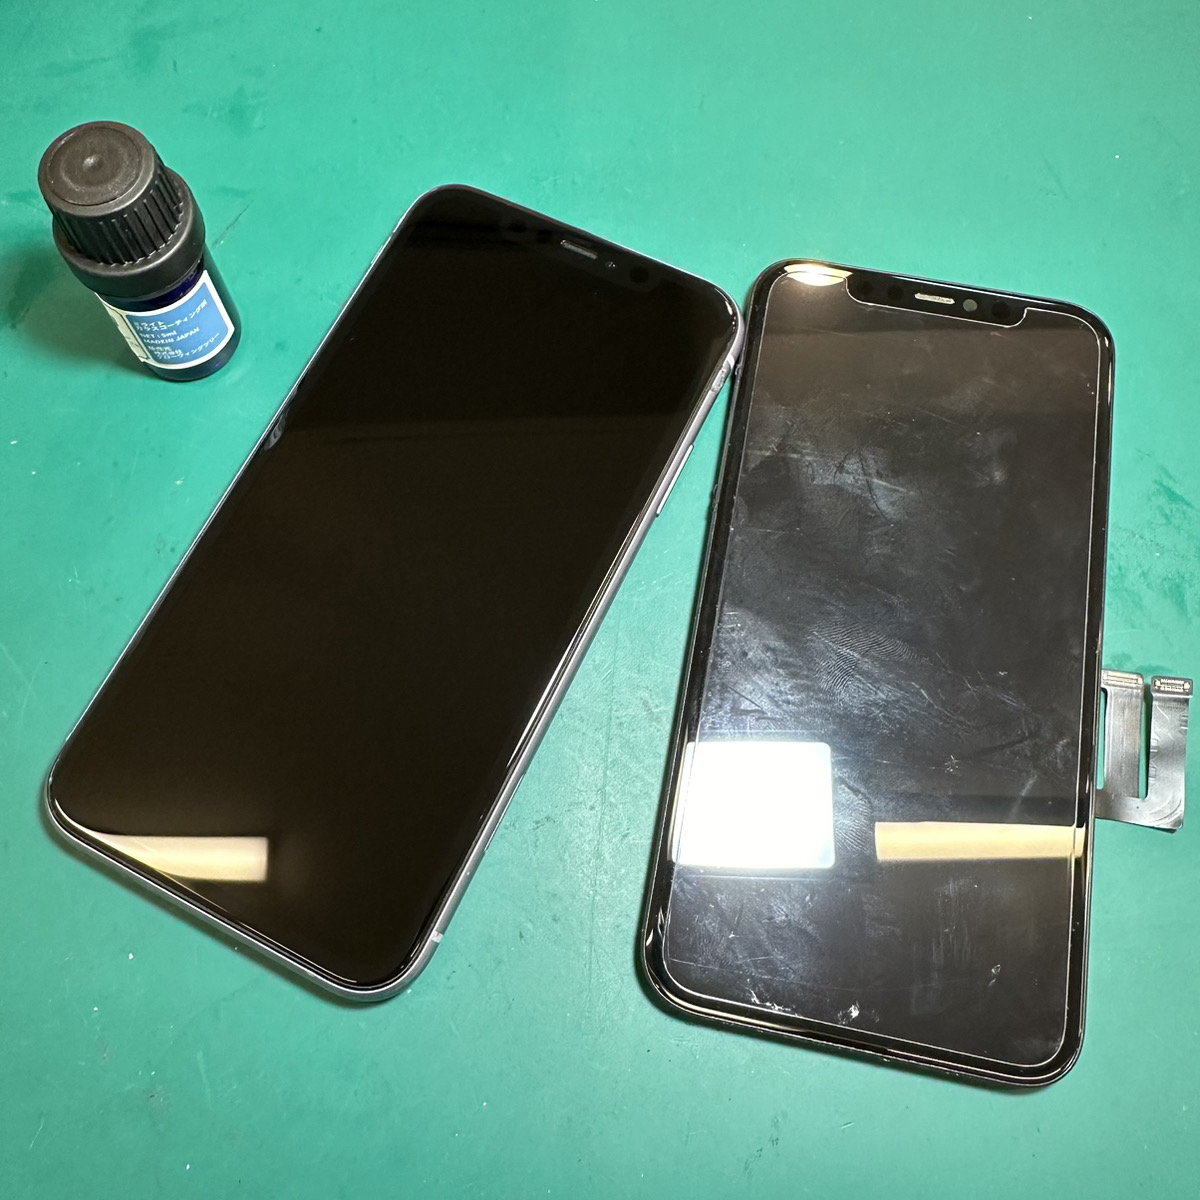 浦和原山店: iPhone11重度液晶修理7,800円